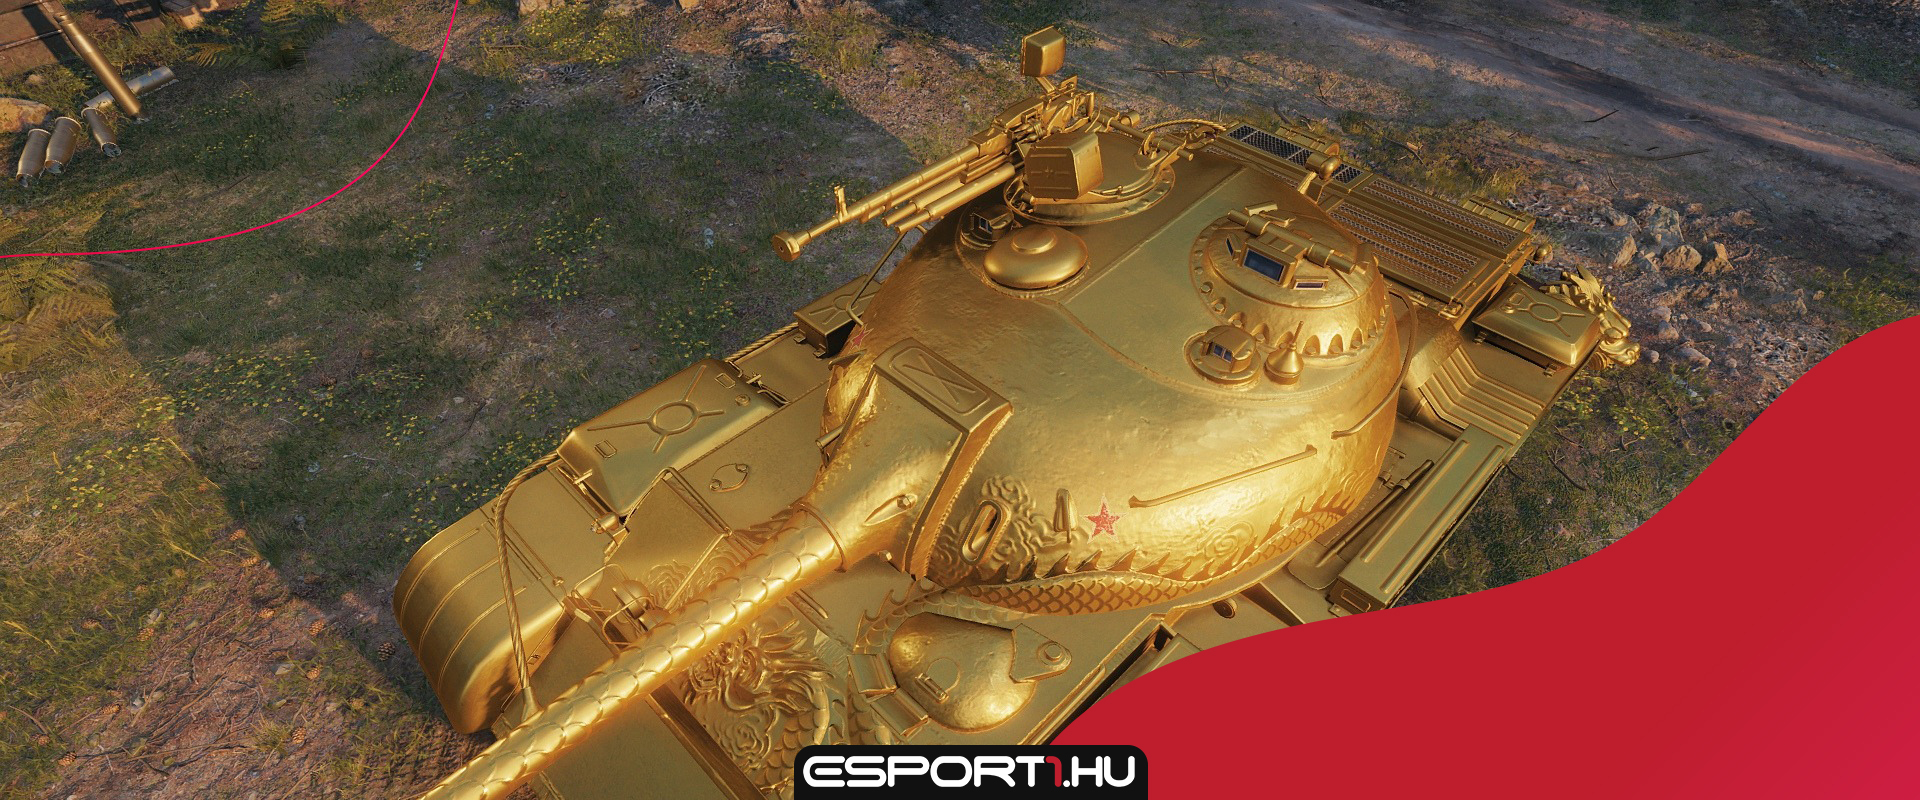 Az európai szerveren is megjelenhet az arany Type 59?